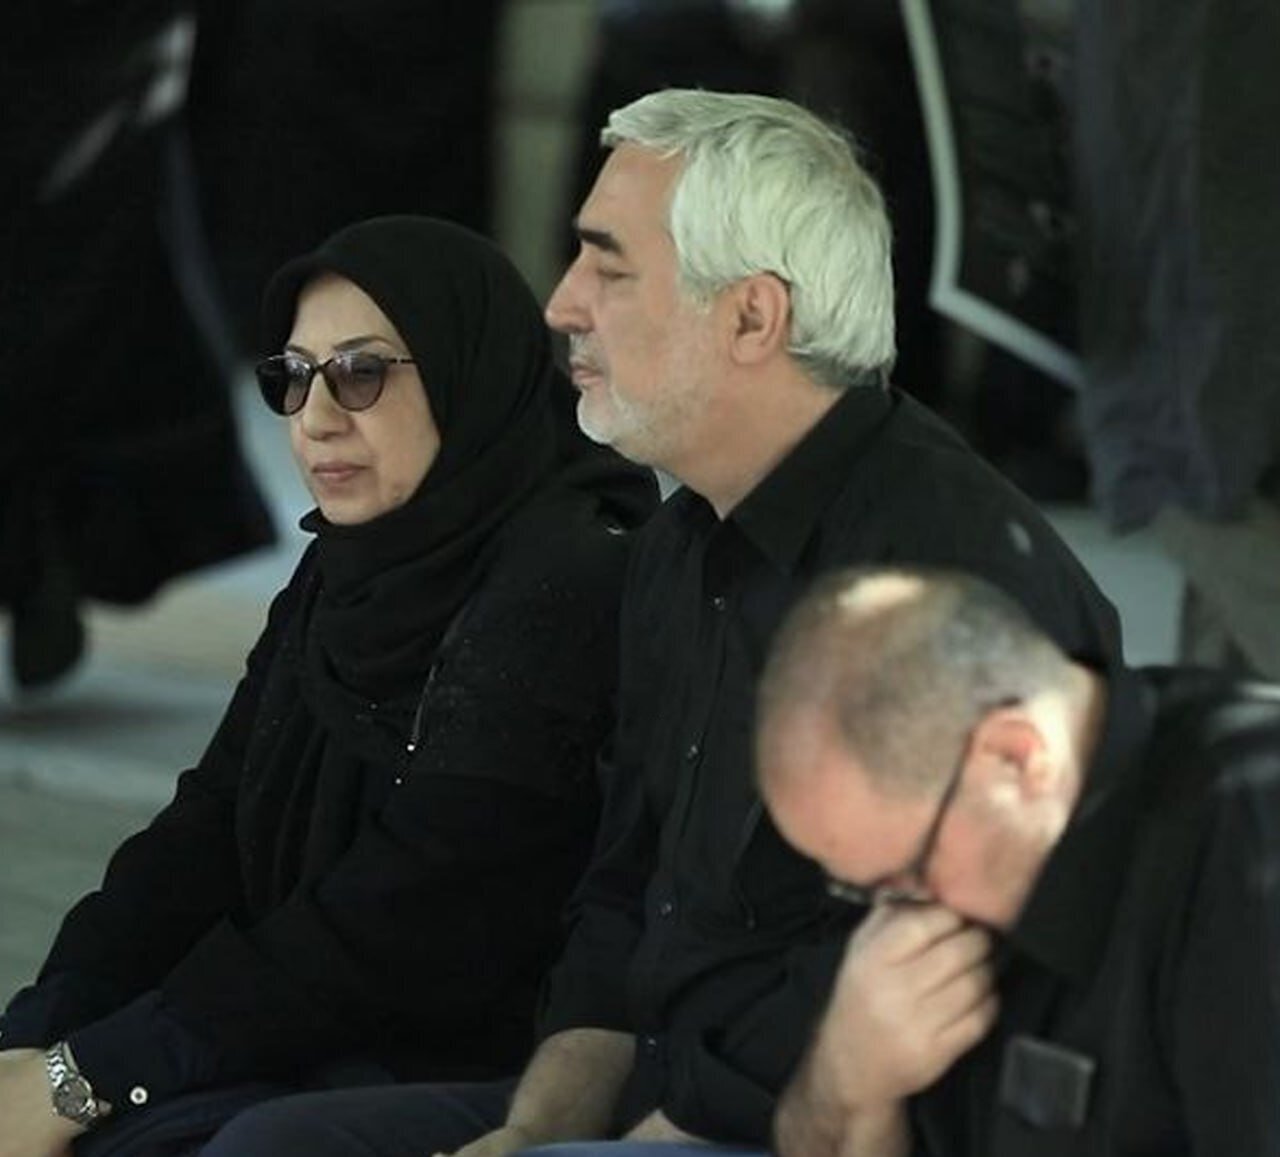 تصویری غمگین از کارگردان سرشناس سینمای ایران در مراسم تشییع رئیسی +عکس